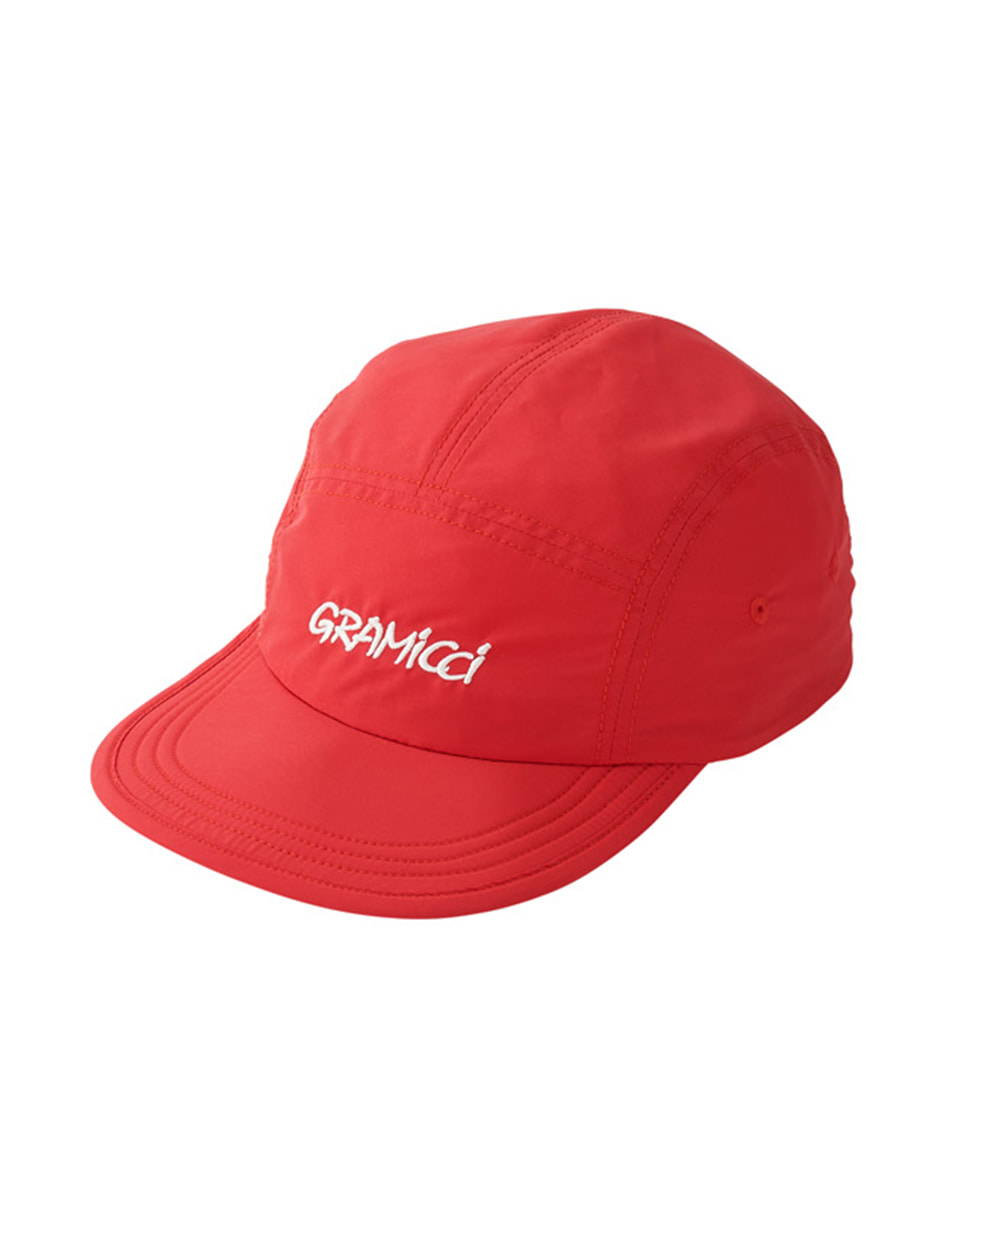 그라미치 SHELL JET CAP (Red)